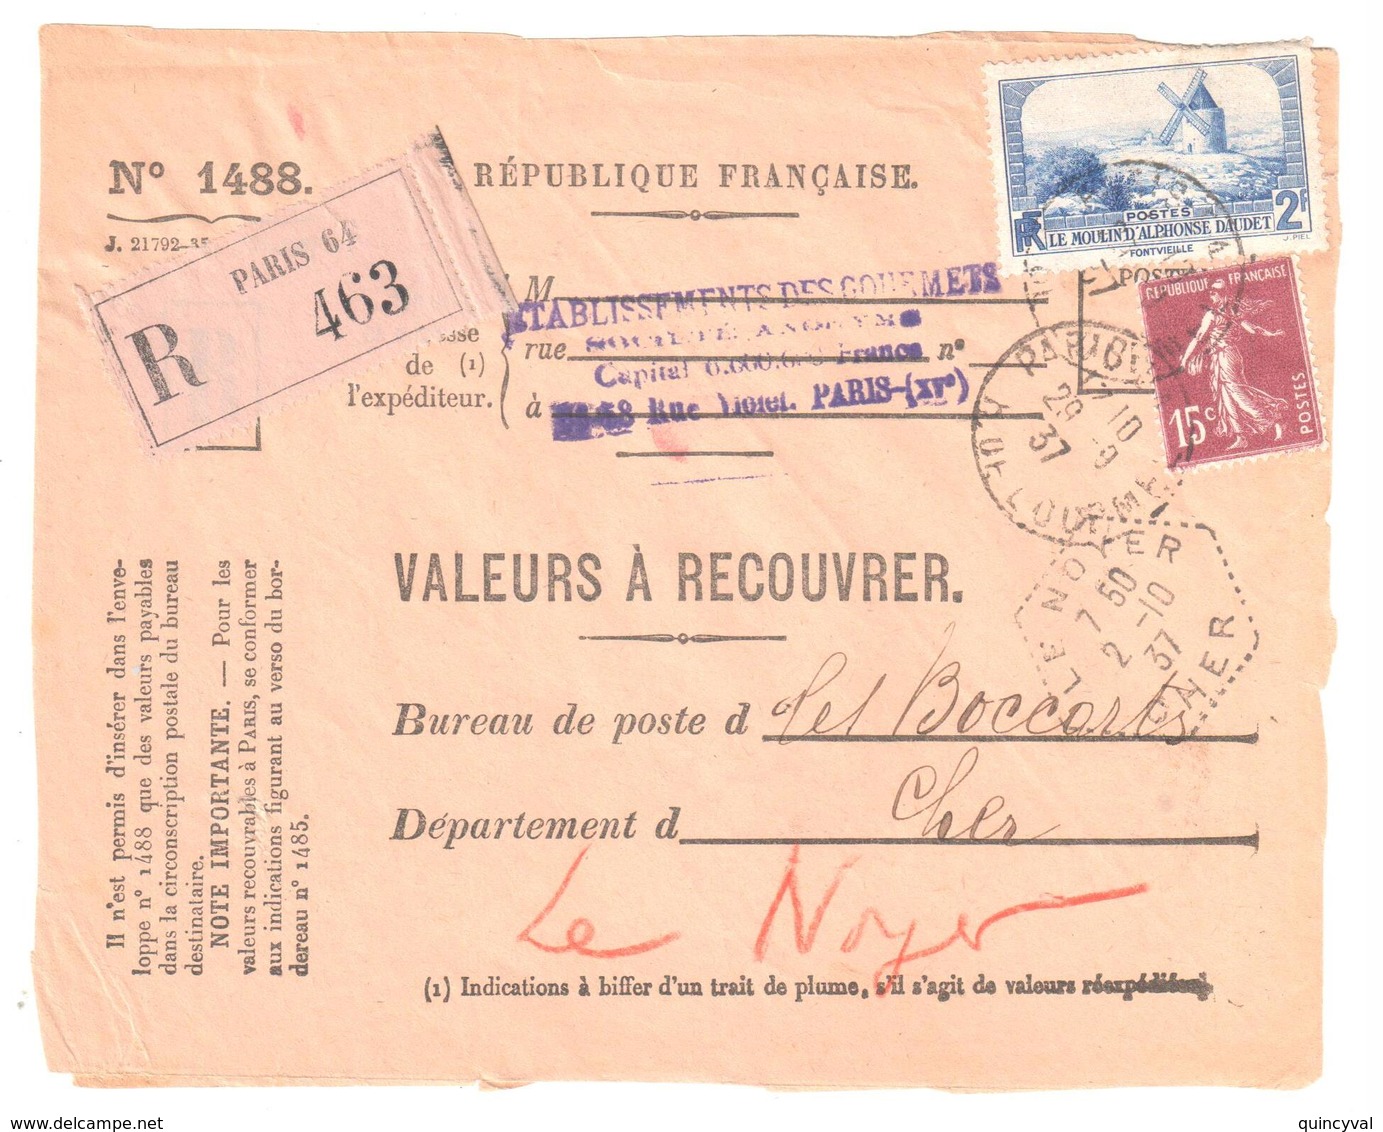 PARIS 64 Valeur à Recouvrer N° 1488 Daudet Semeuse 15 C Yv 311 189 Ob 1937 Dest Le Noyer Cher Hexagone Pointillé F4 - Cartas & Documentos